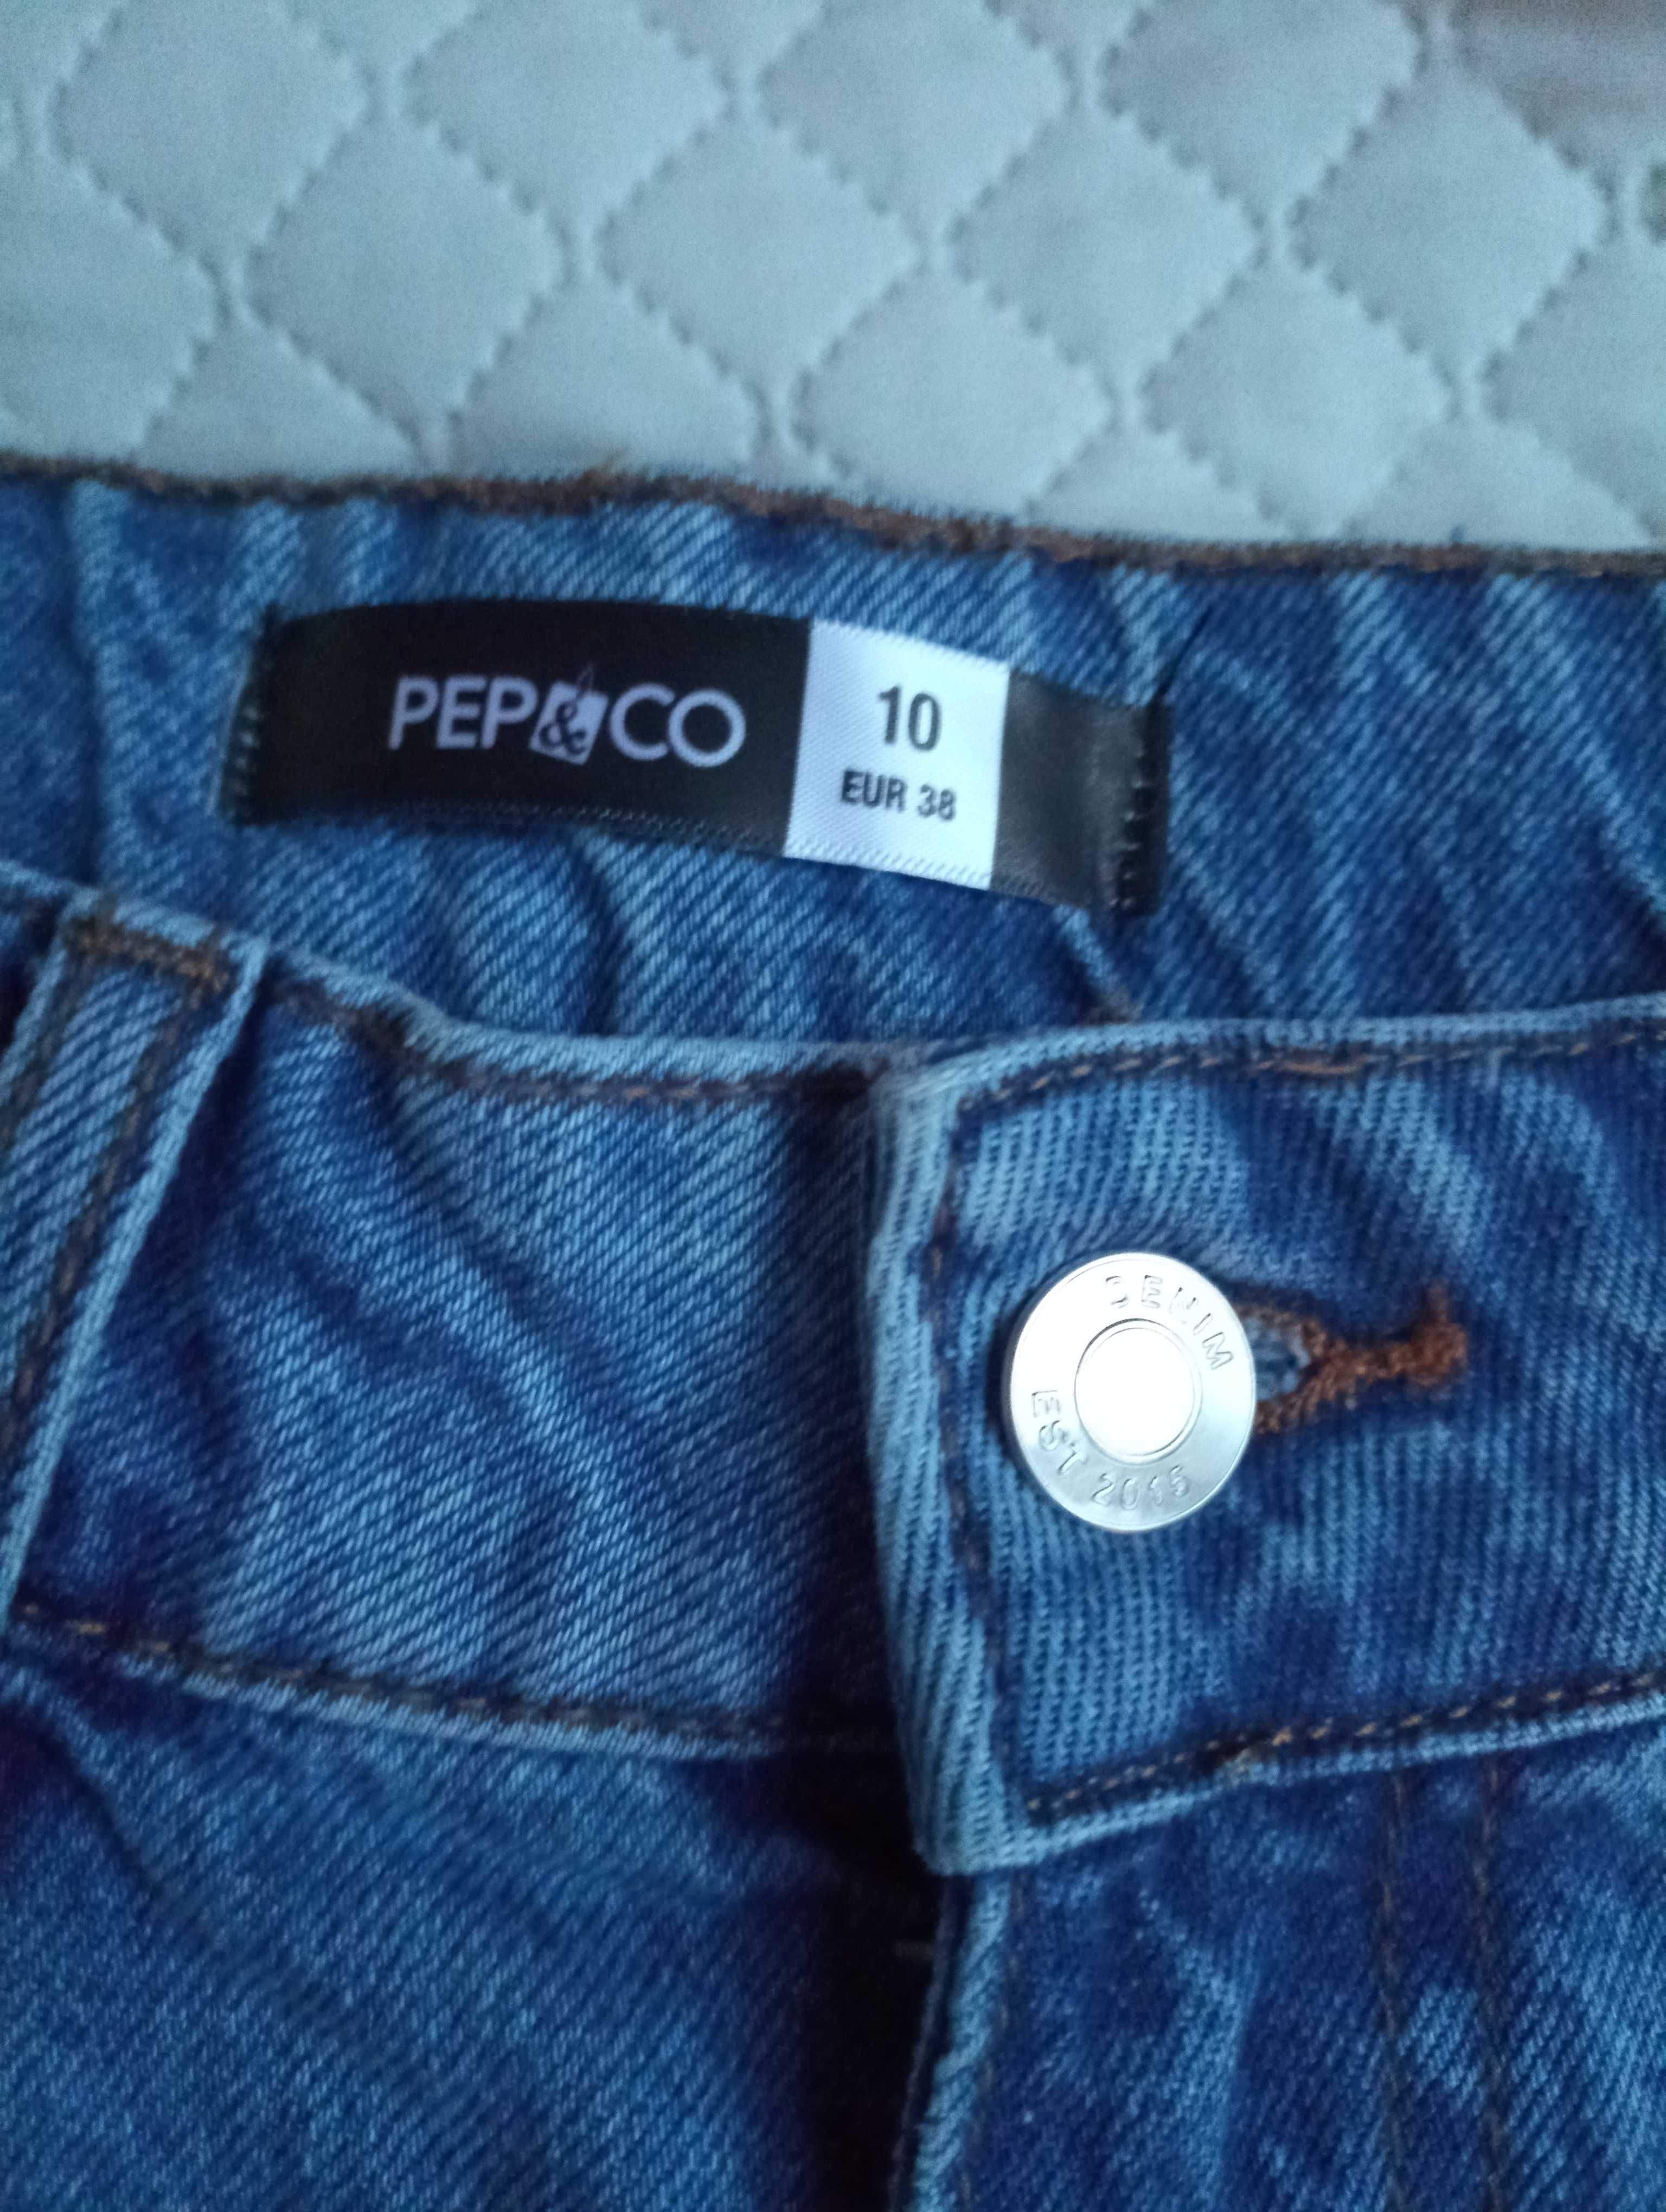 Damskie nowe spodenki jeansowe firmy Pro&Co roz eur 38(10)